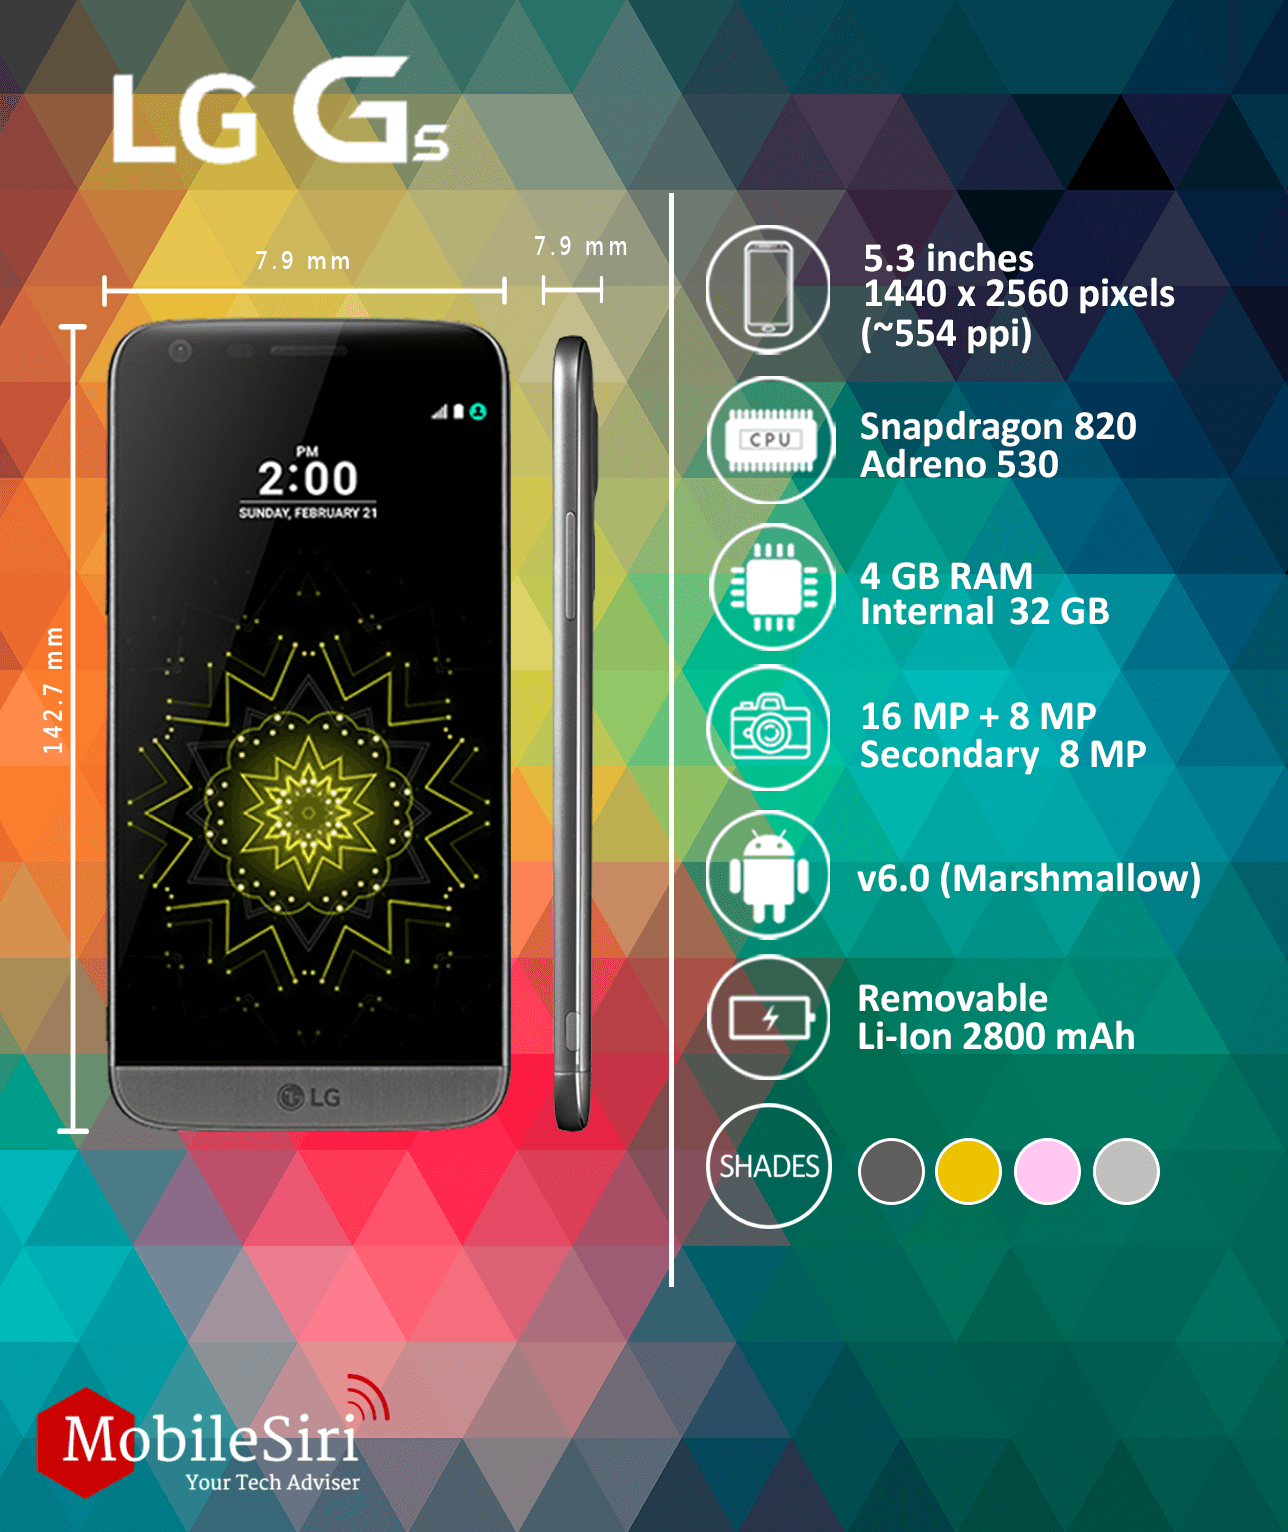 LG G5 mobilesiri mwc 2016